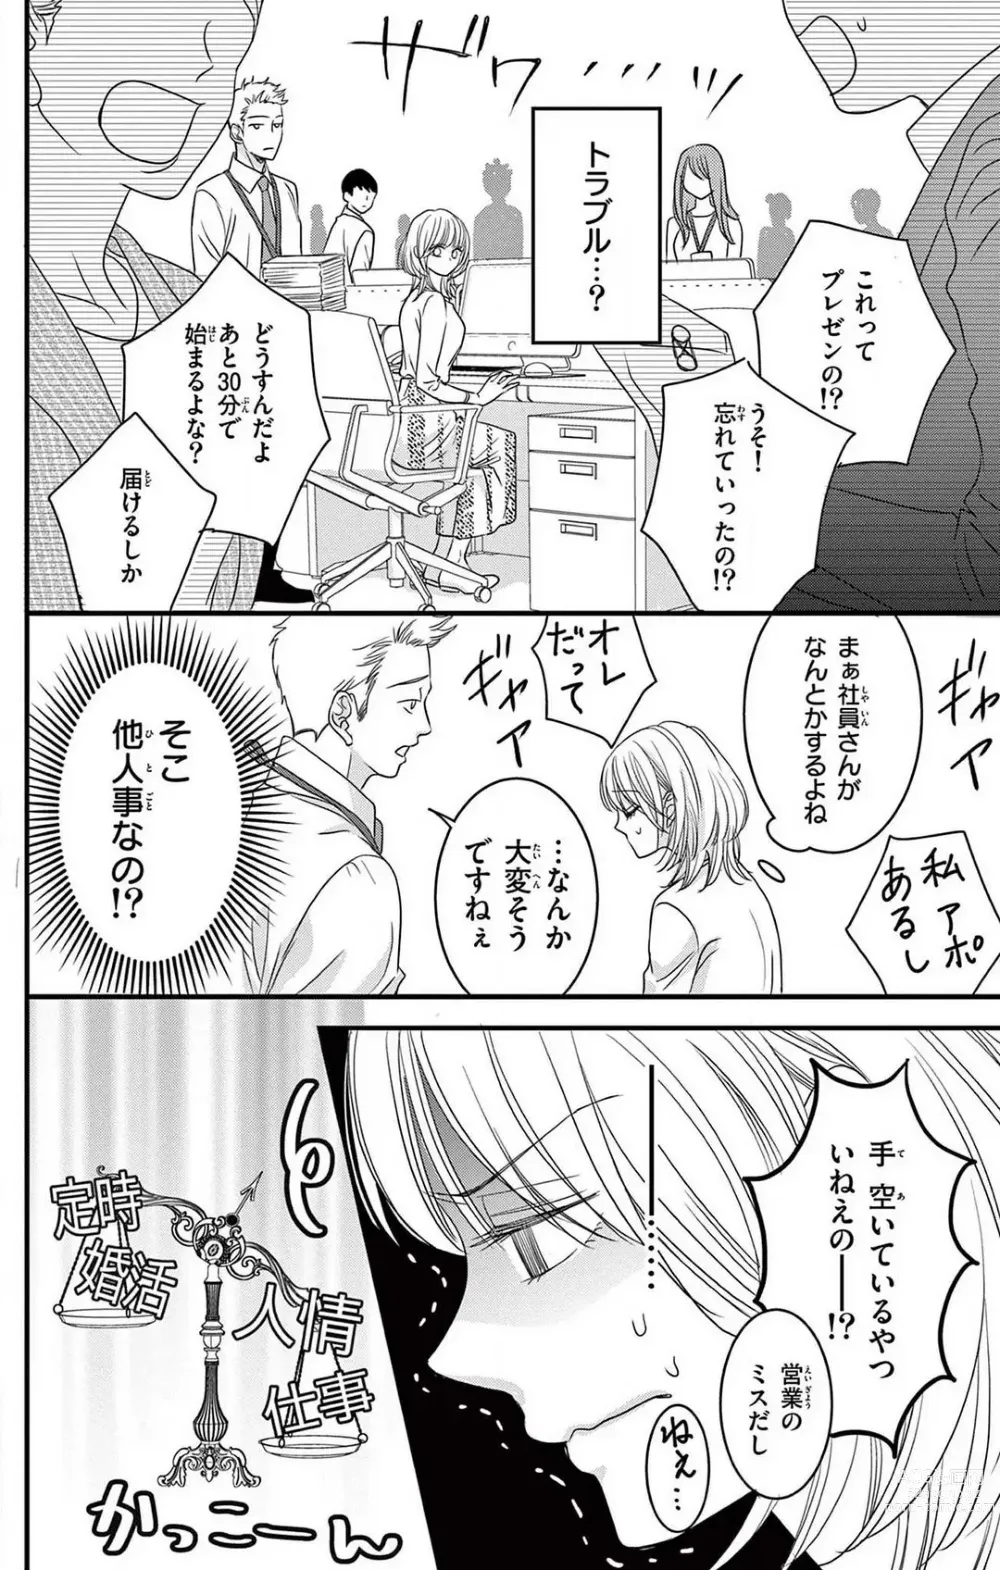 Page 6 of manga Kuzu wa Kuzu Demo Kao ga ii Kuzu 1-7